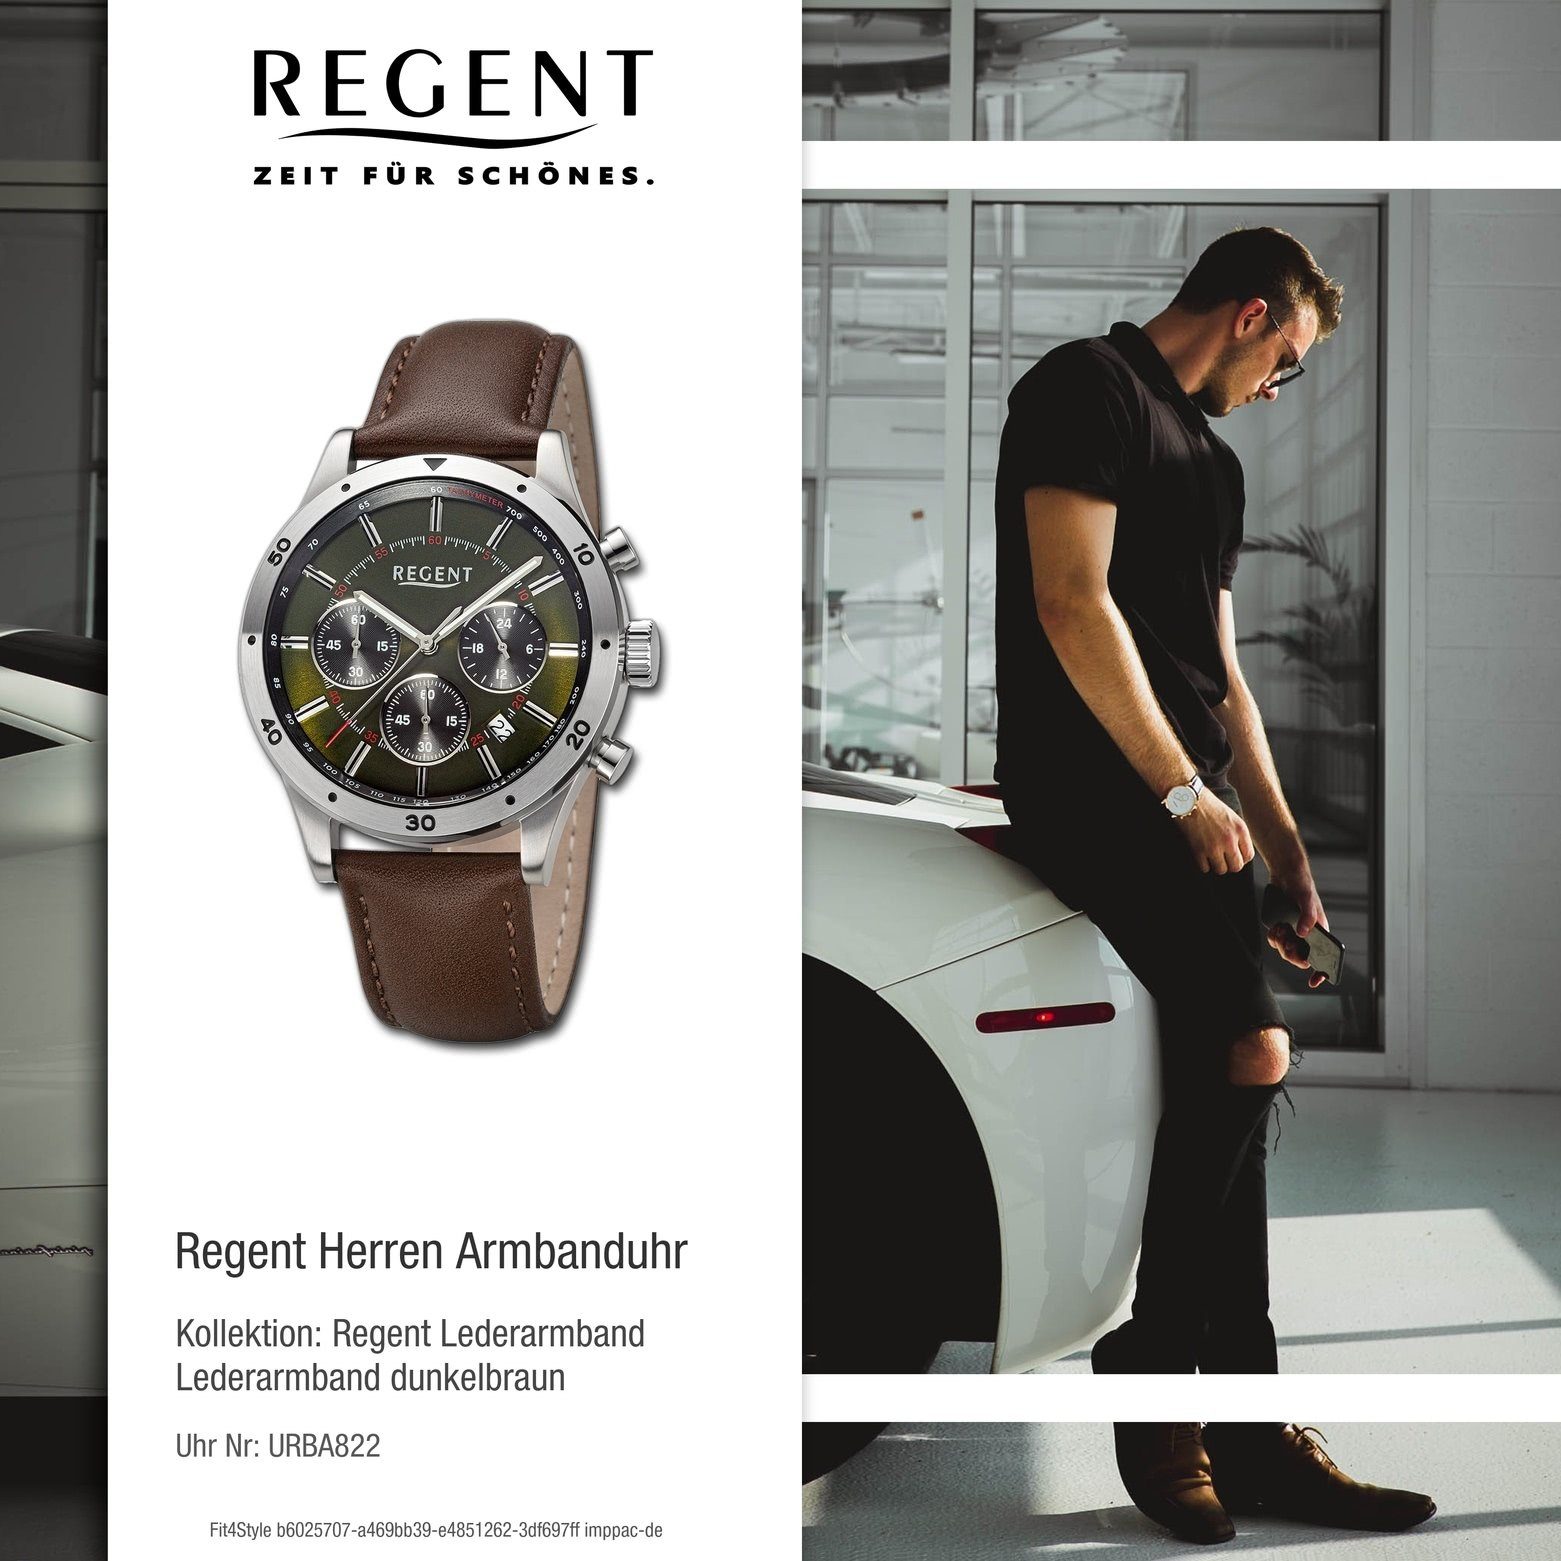 41mm), Regent grün Analog, extra Armbanduhr Regent Quarzuhr (ca. Herren groß Armbanduhr rund, Herren Lederarmband